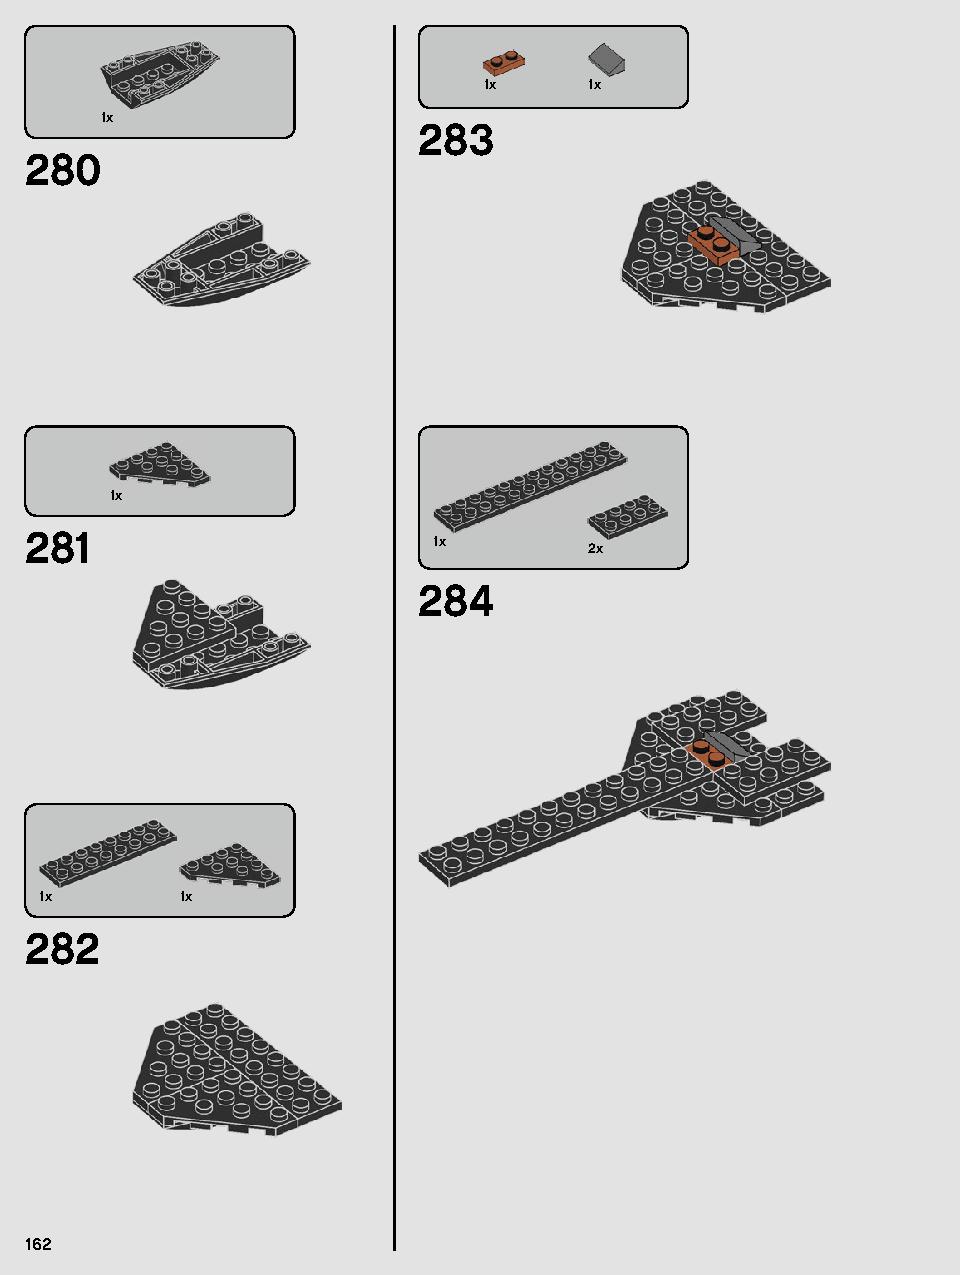 스타워즈 카일로 렌의 셔틀™ 75256 레고 세트 제품정보 레고 조립설명서 162 page